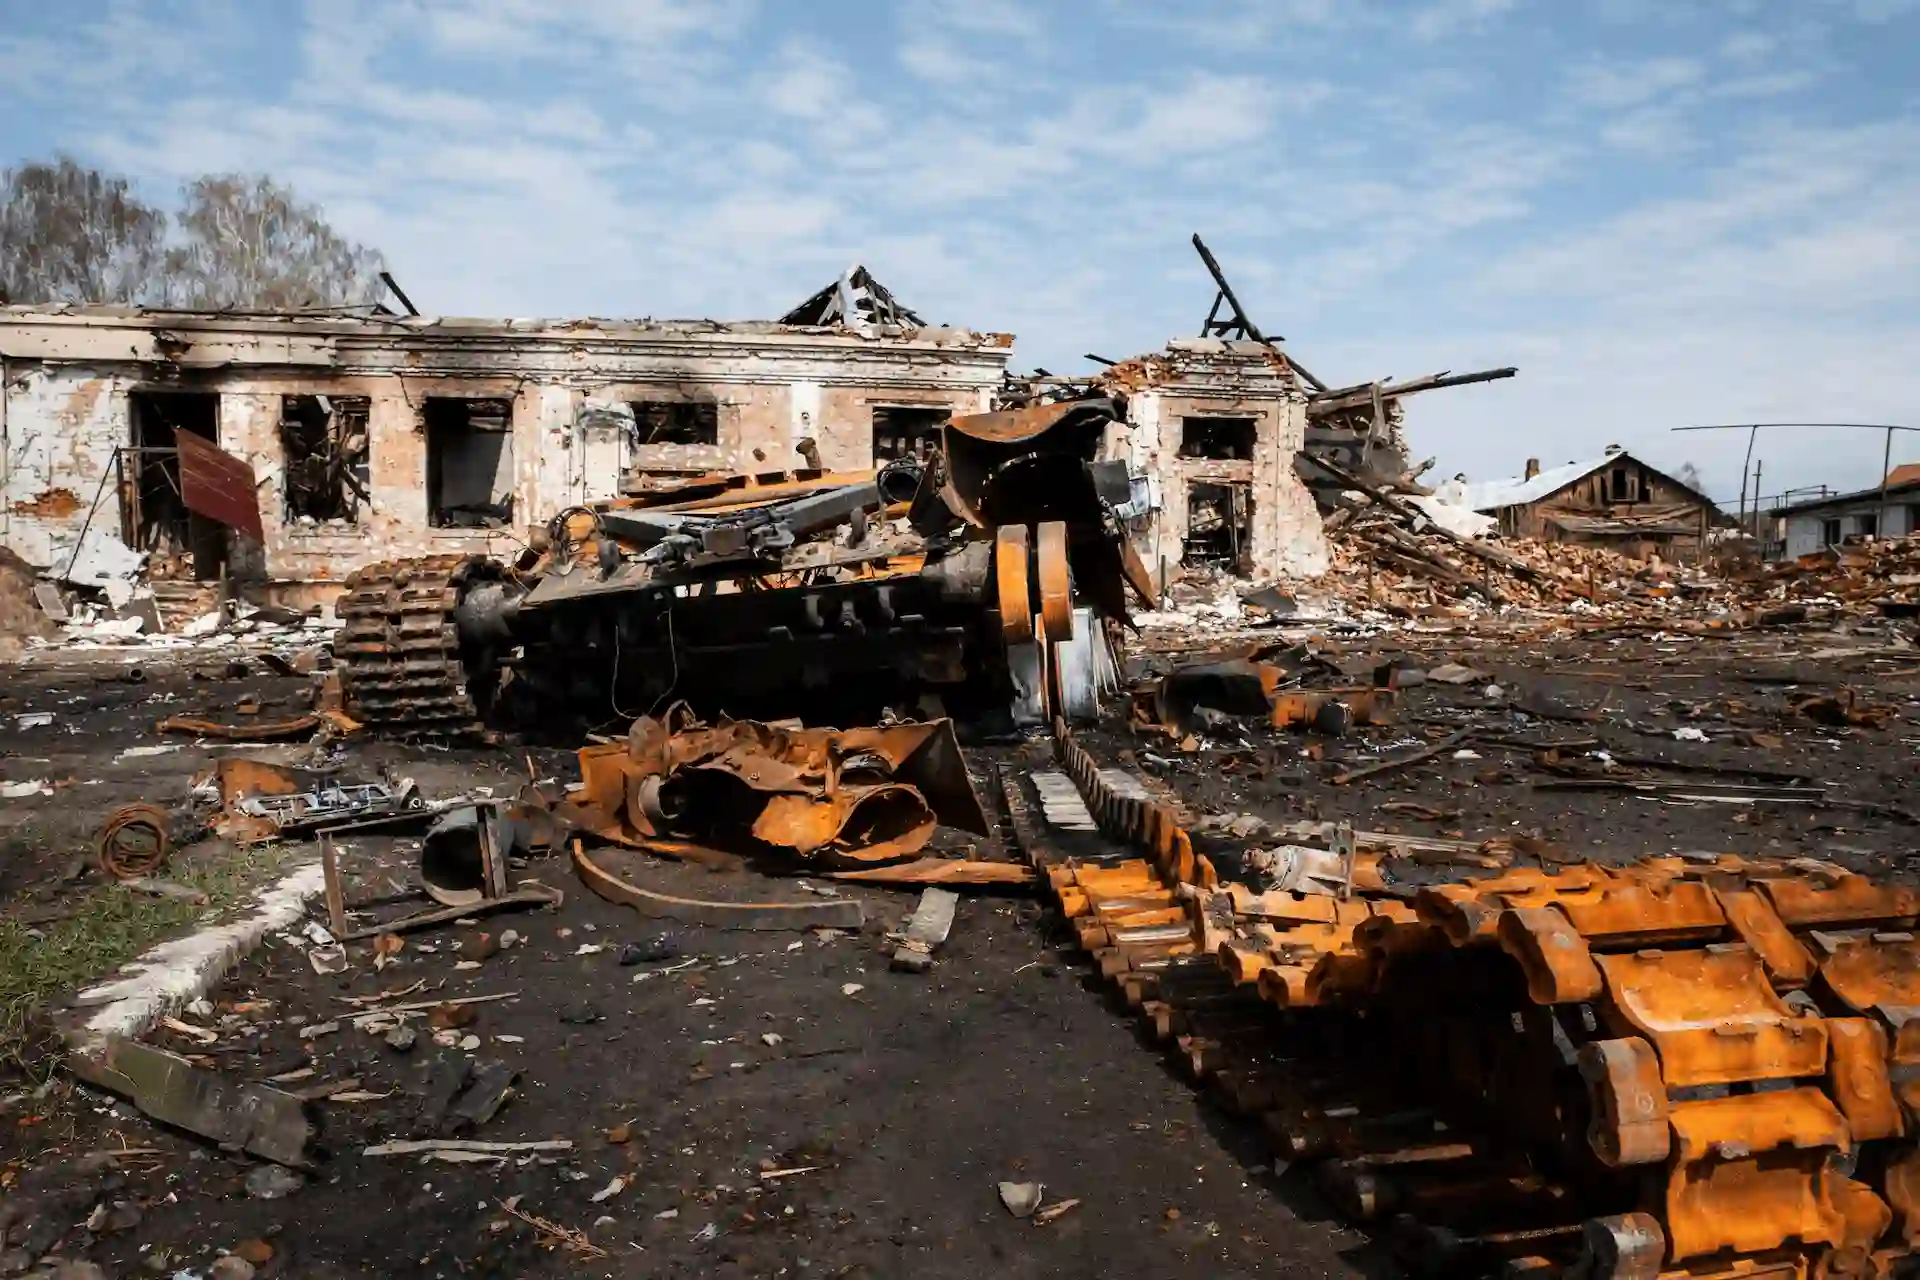 Un tanque destrozado en la guerra de Ucrania. El conflicto de Nagoro Karabaj podría desestabilizar toda la zona del Cáucaso / Foto: FP